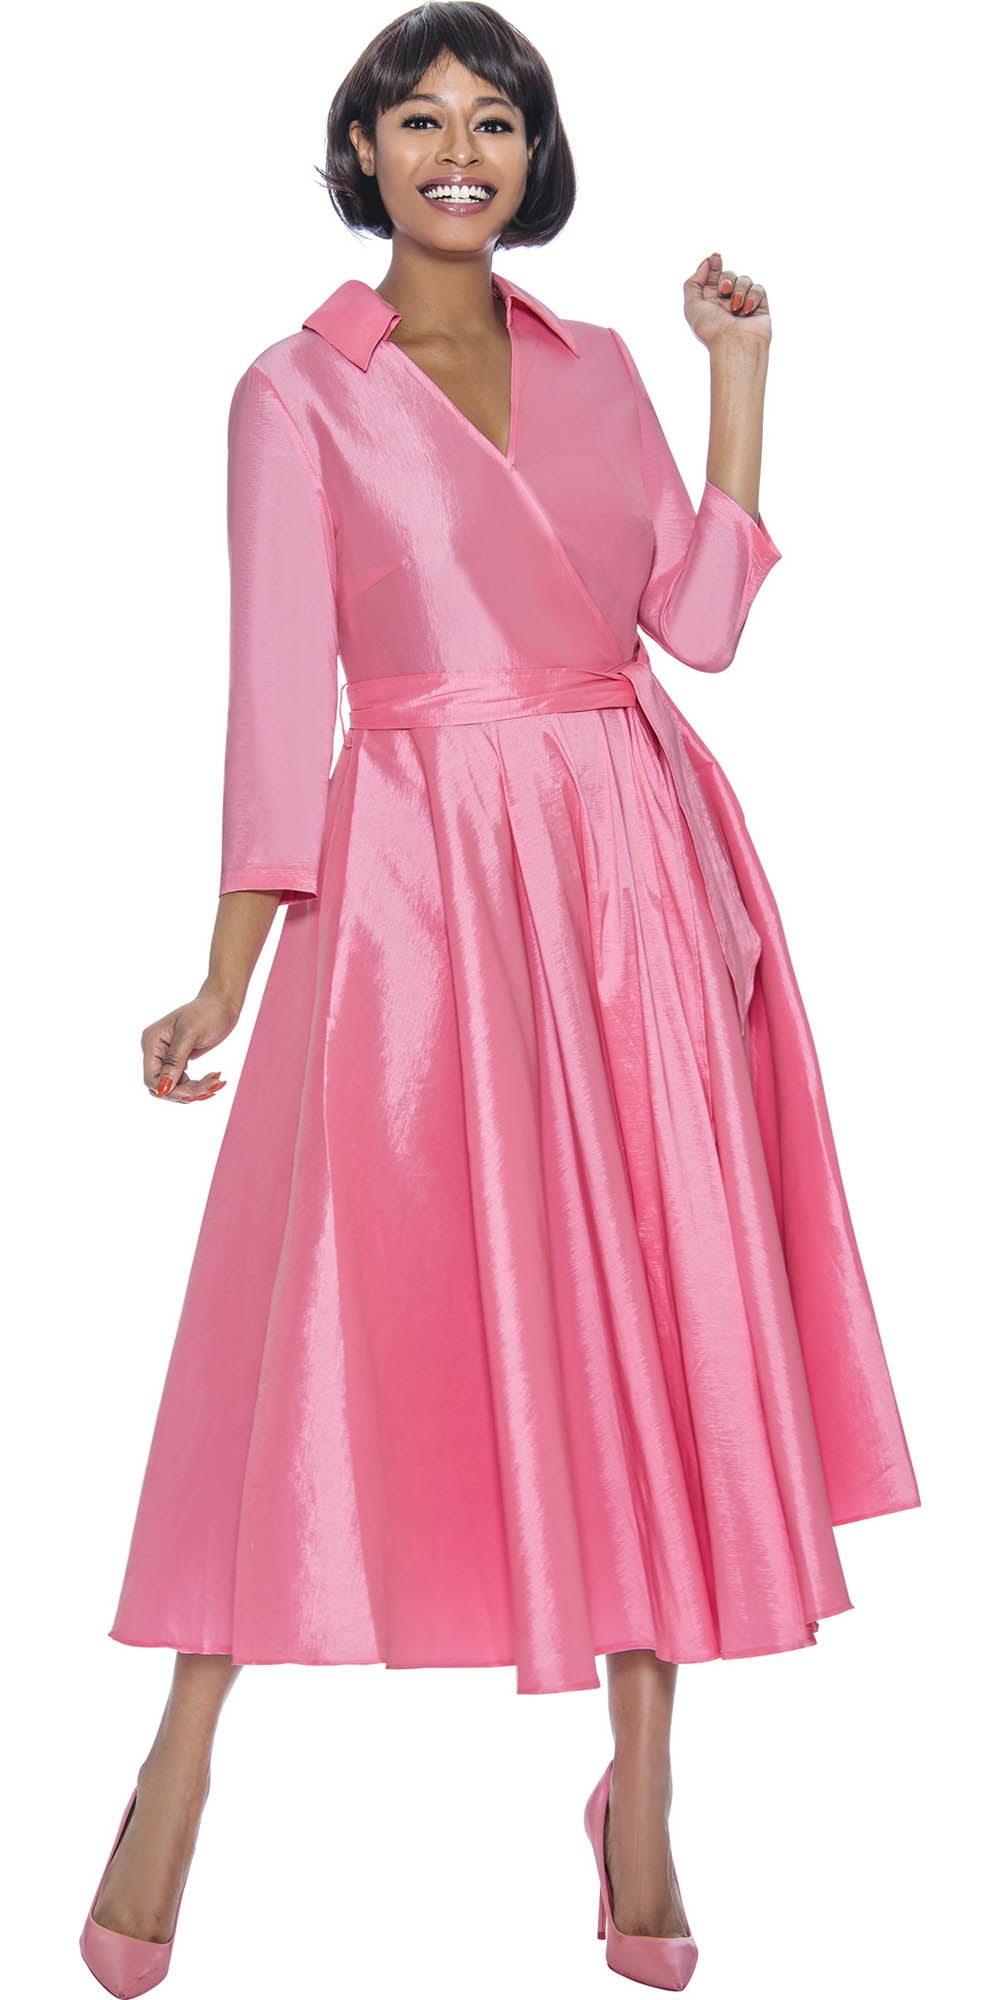 Terramina - 7869 - Pink - Silk Look Dress With Sash Belt